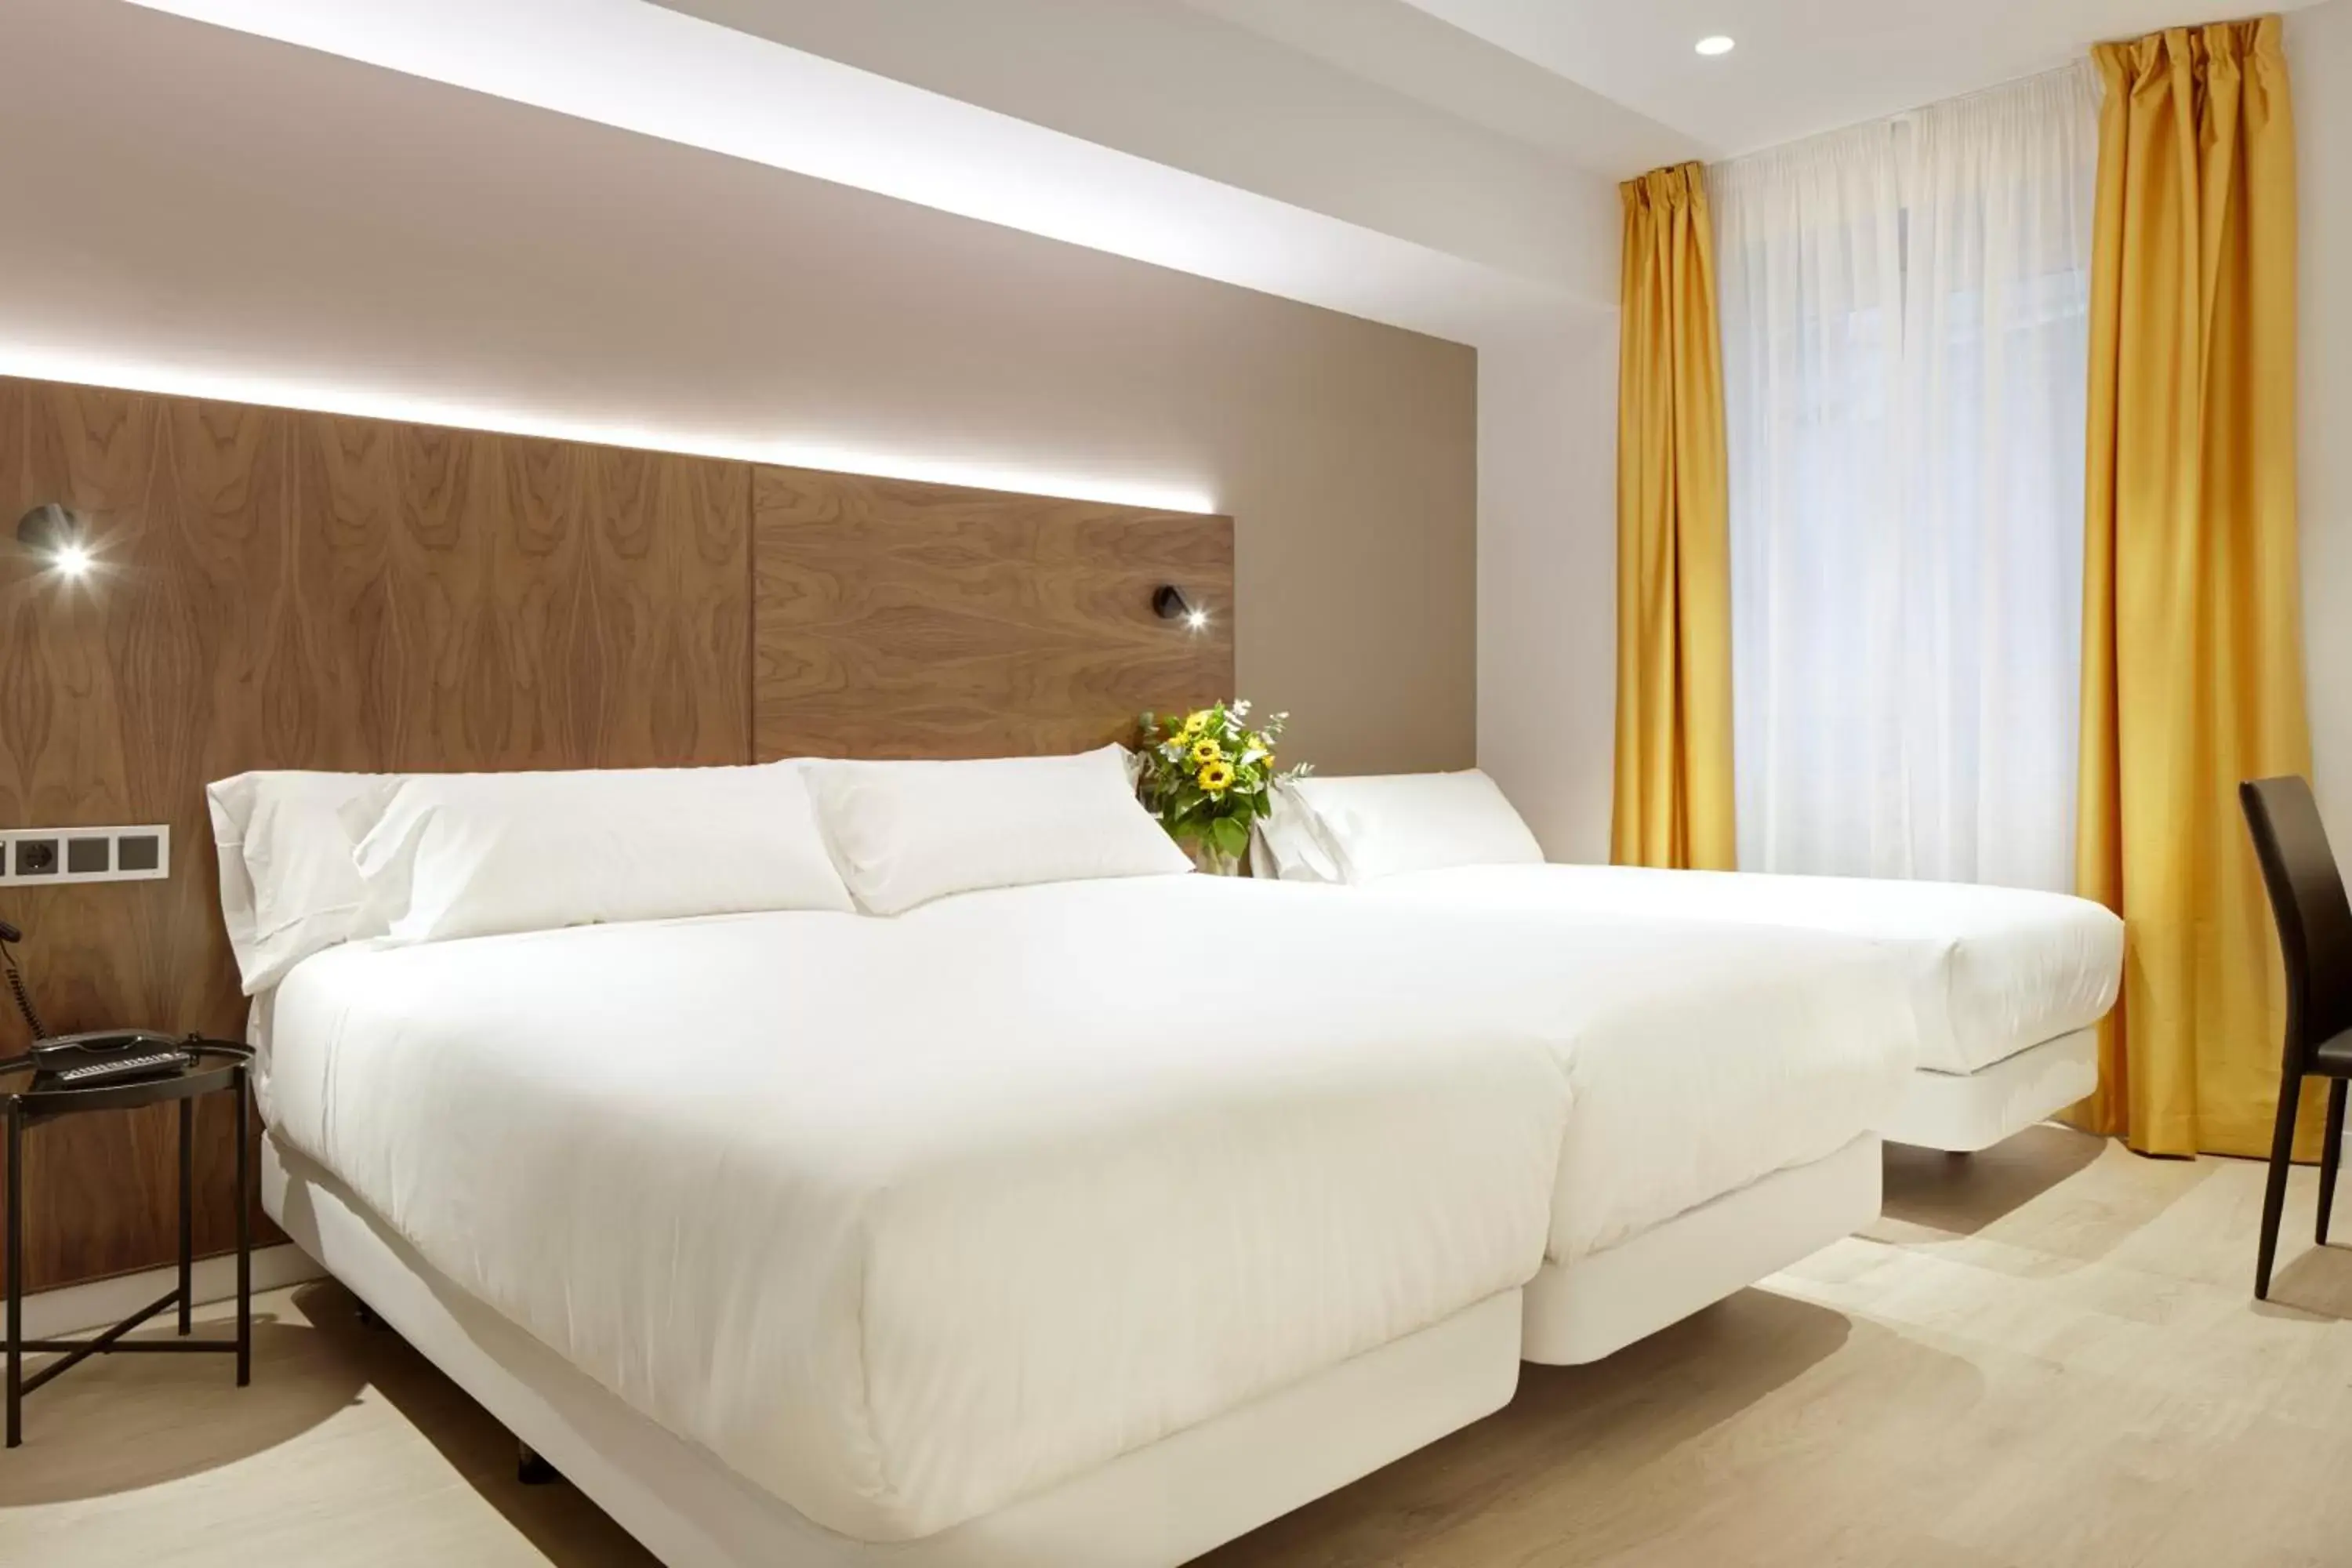 Bed in Hotel Arrizul Congress